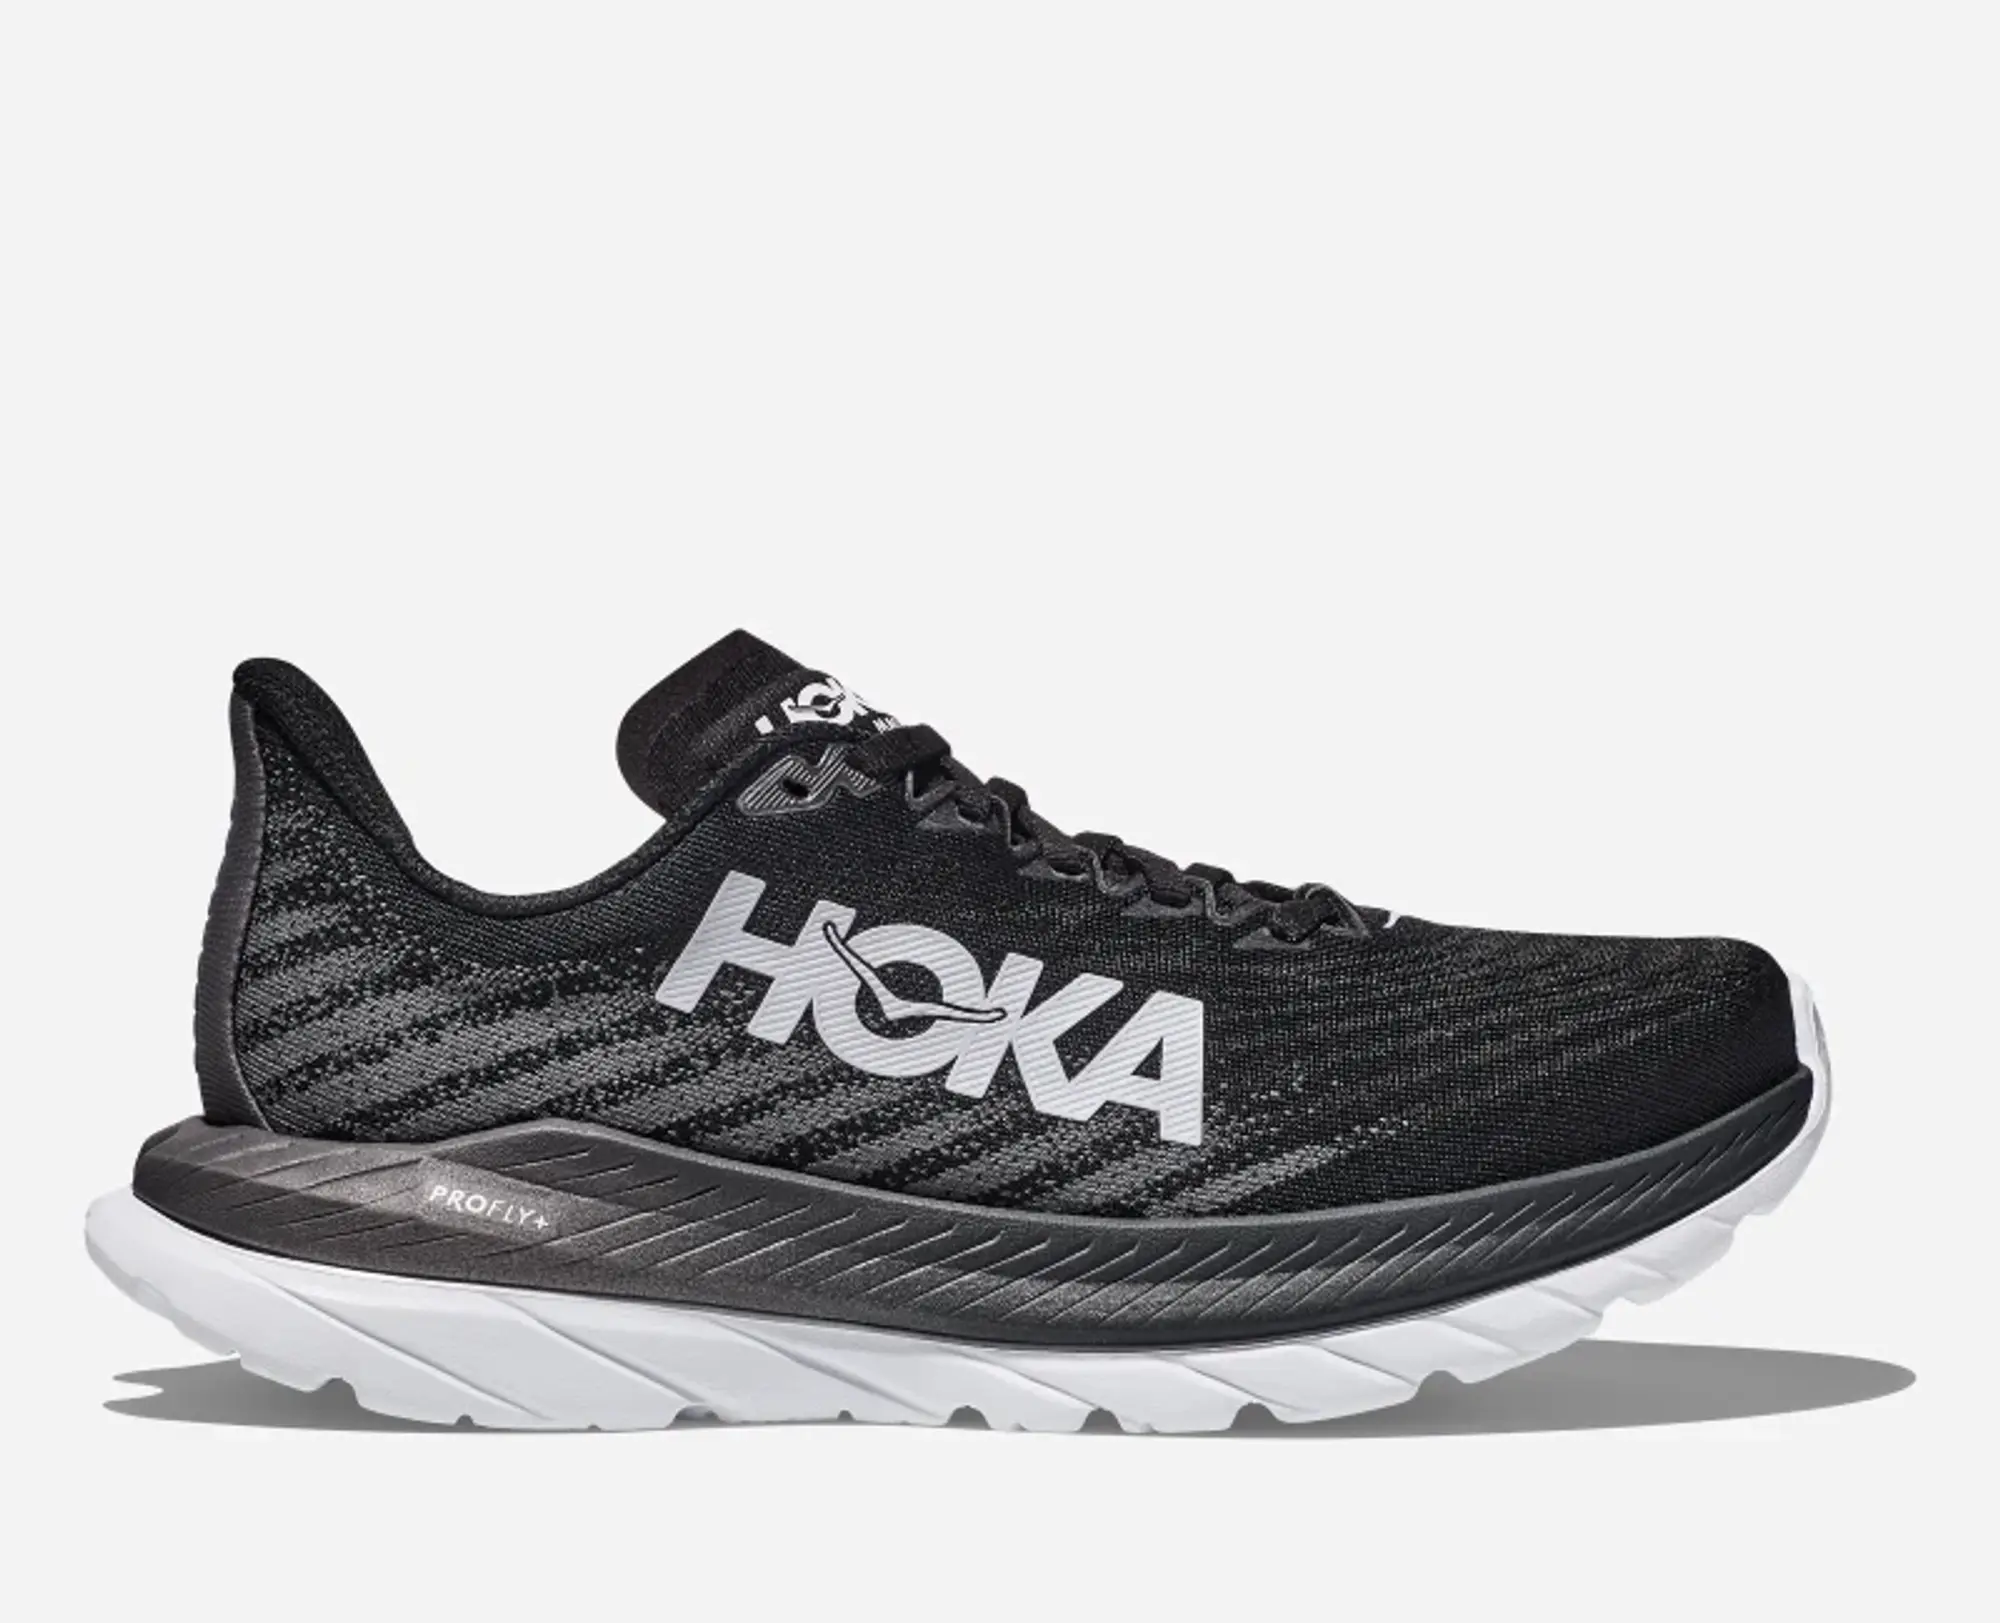 Hoka One One HOKA Women's Mach 5 Running Shoes in Black/Castlerock